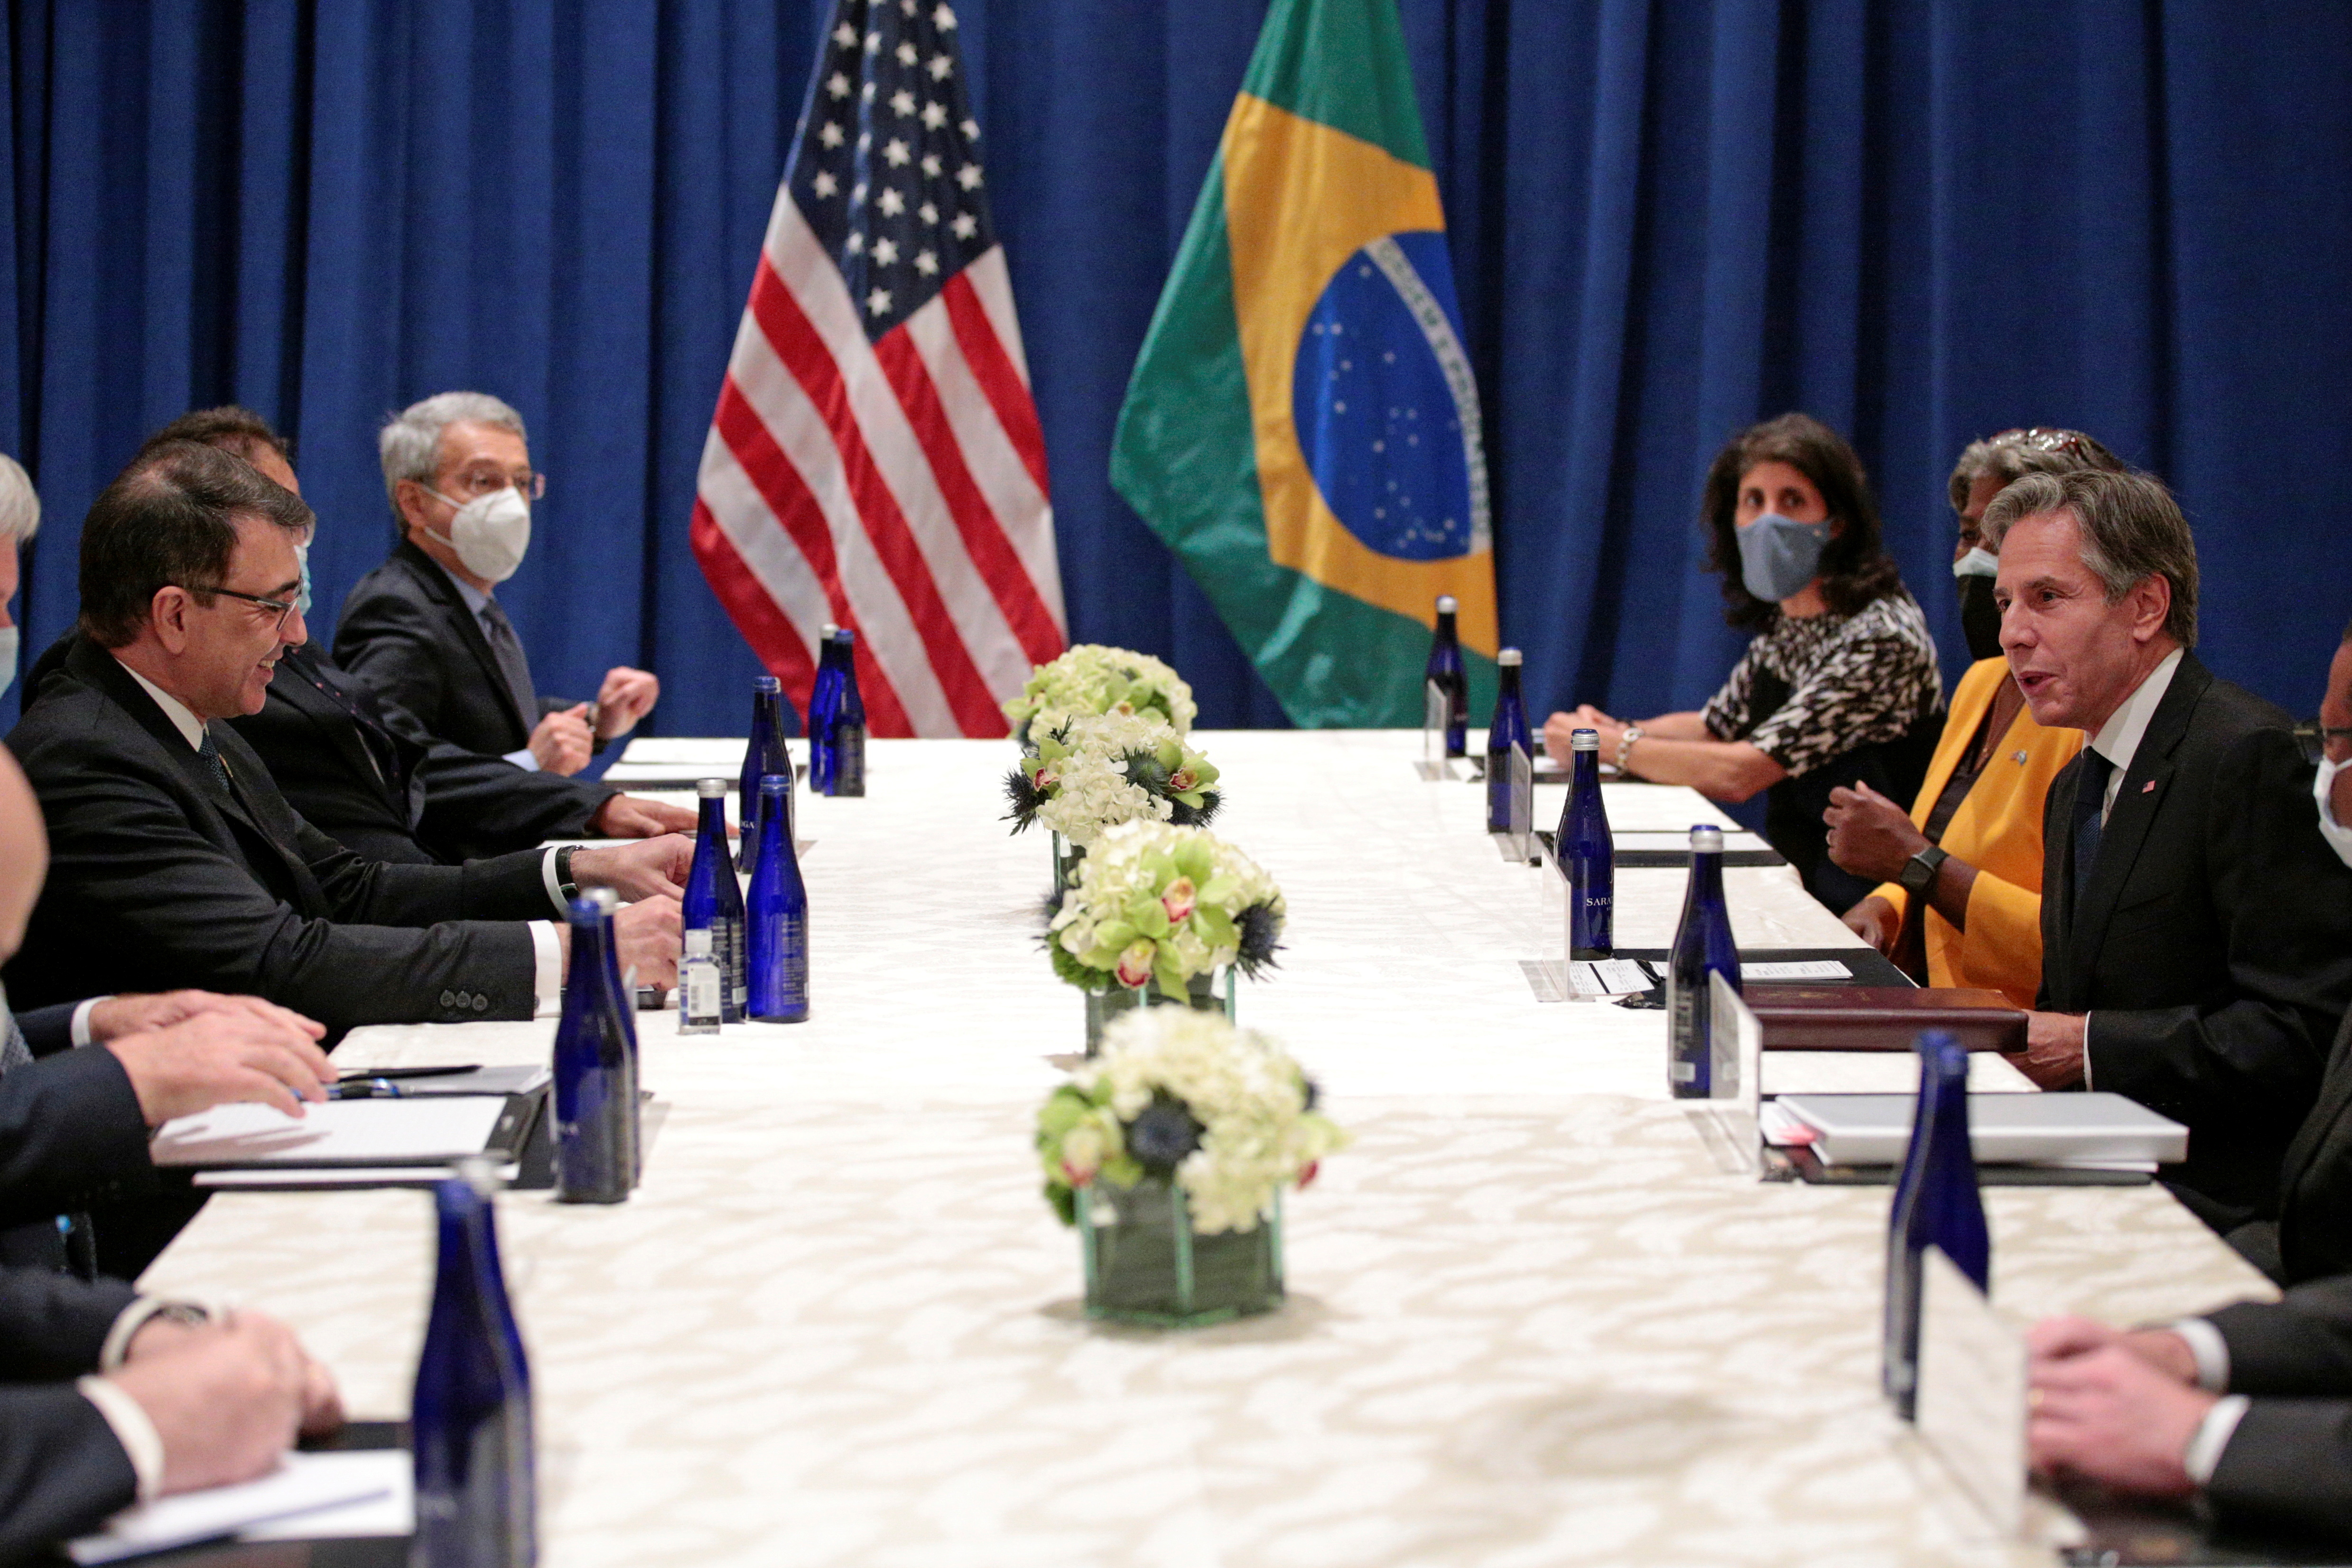 U.S. Secretary of State Blinken meets Brazilian Foreign Minister Franca in New York